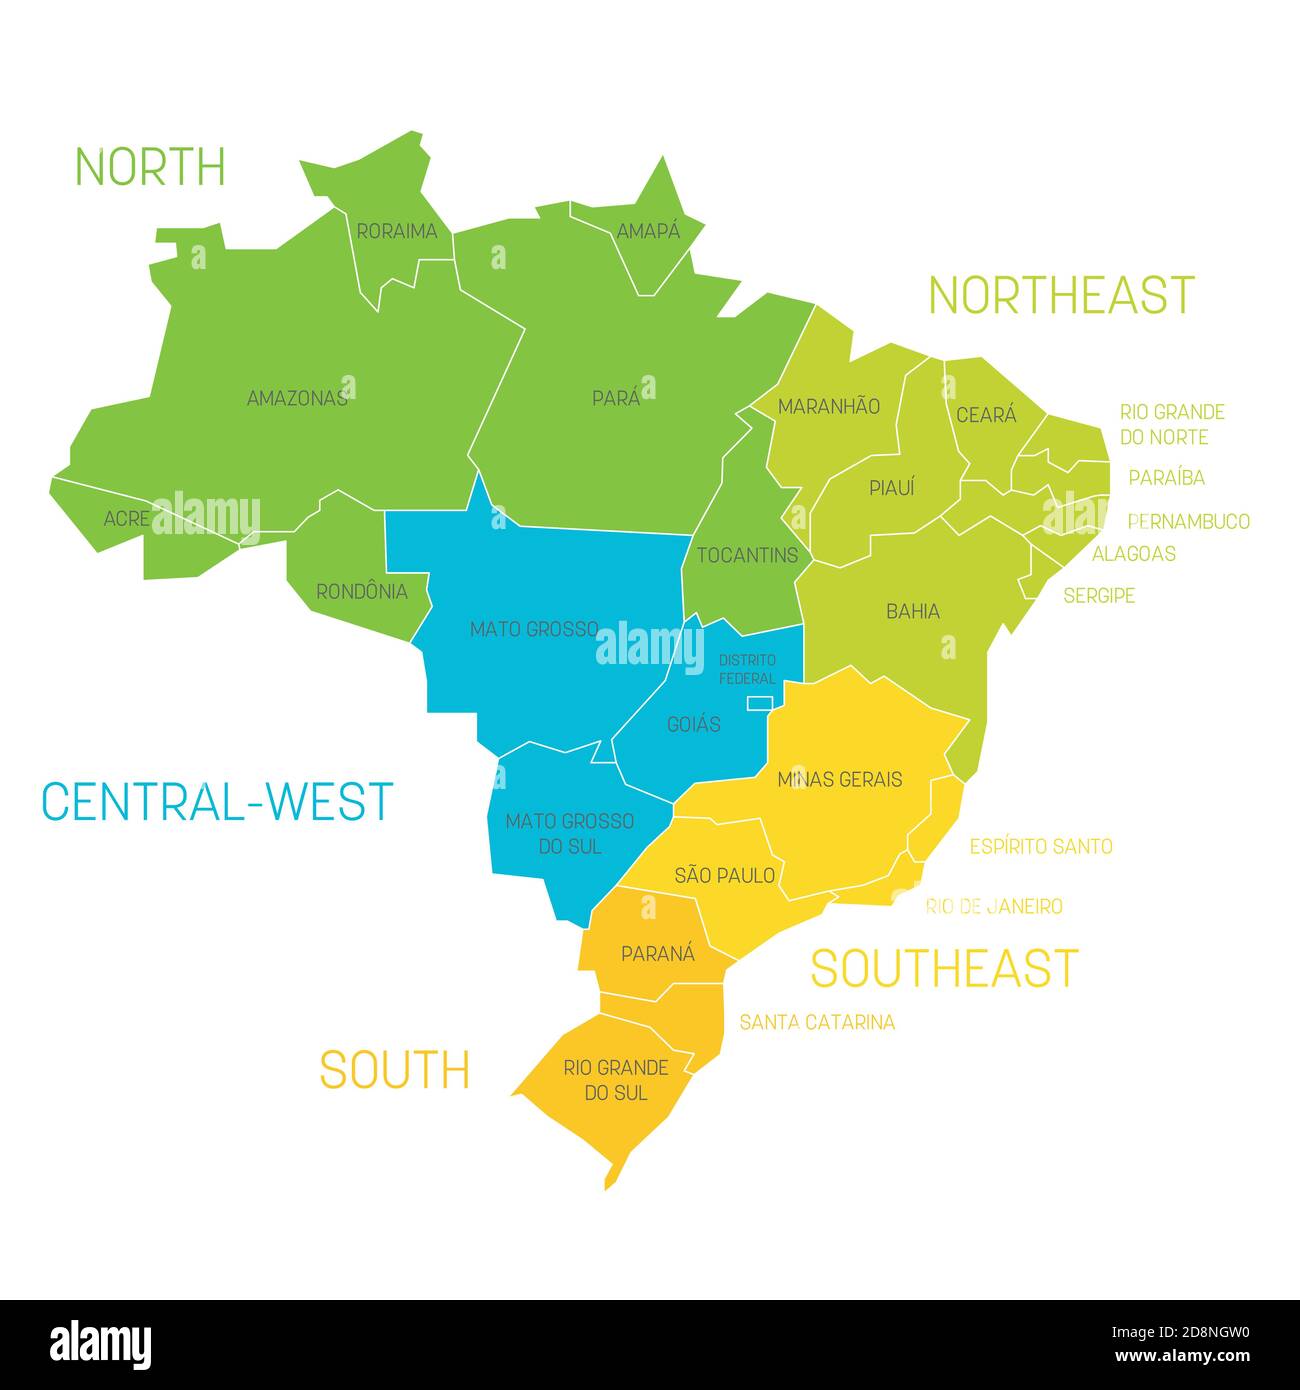 Bunte politische Landkarte von Brasilien. Staaten teilen sich durch Farbe in 5 Regionen. Einfache flache Vektorkarte mit Beschriftungen. Stock Vektor